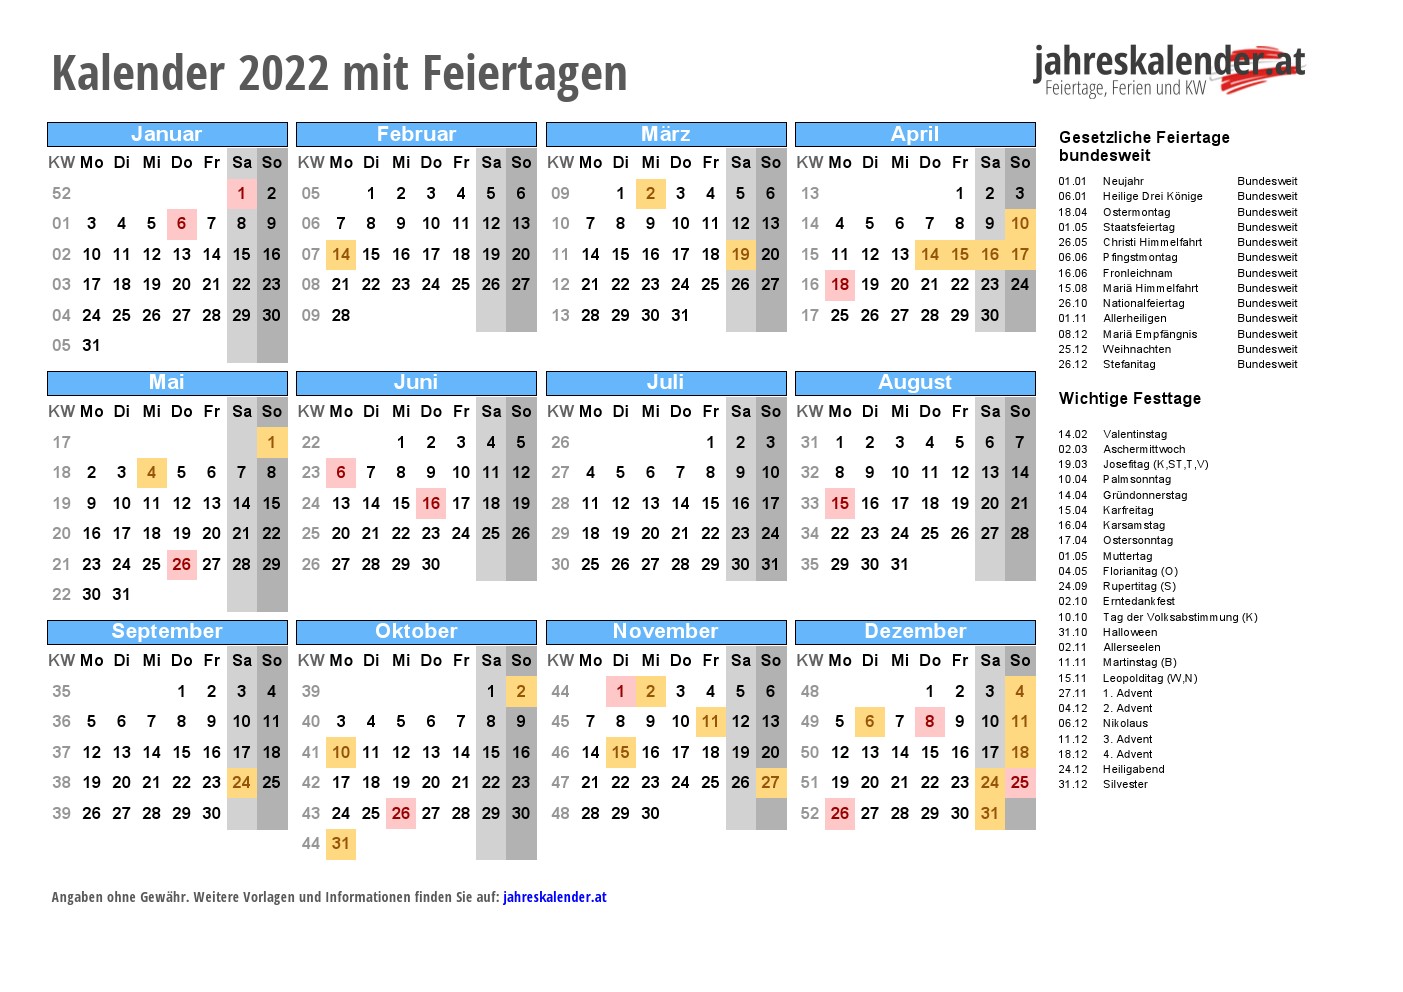 Kalender 2022 Osterreich Mit Feiertagen